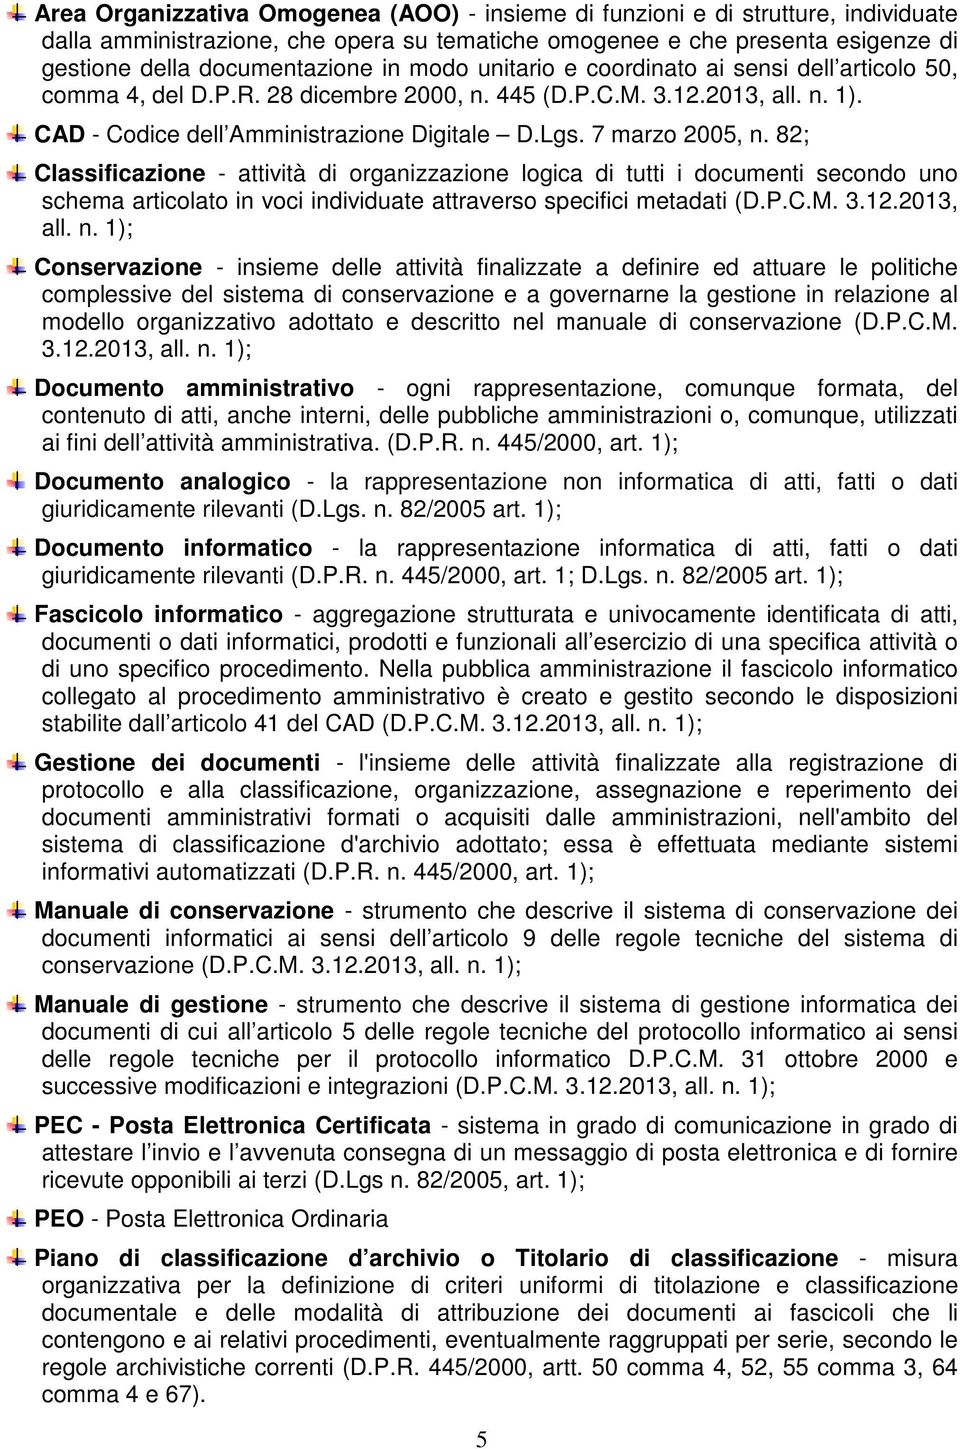 82; Classificazione - attività di organizzazione logica di tutti i documenti secondo uno schema articolato in voci individuate attraverso specifici metadati (D.P.C.M. 3.12.2013, all. n.